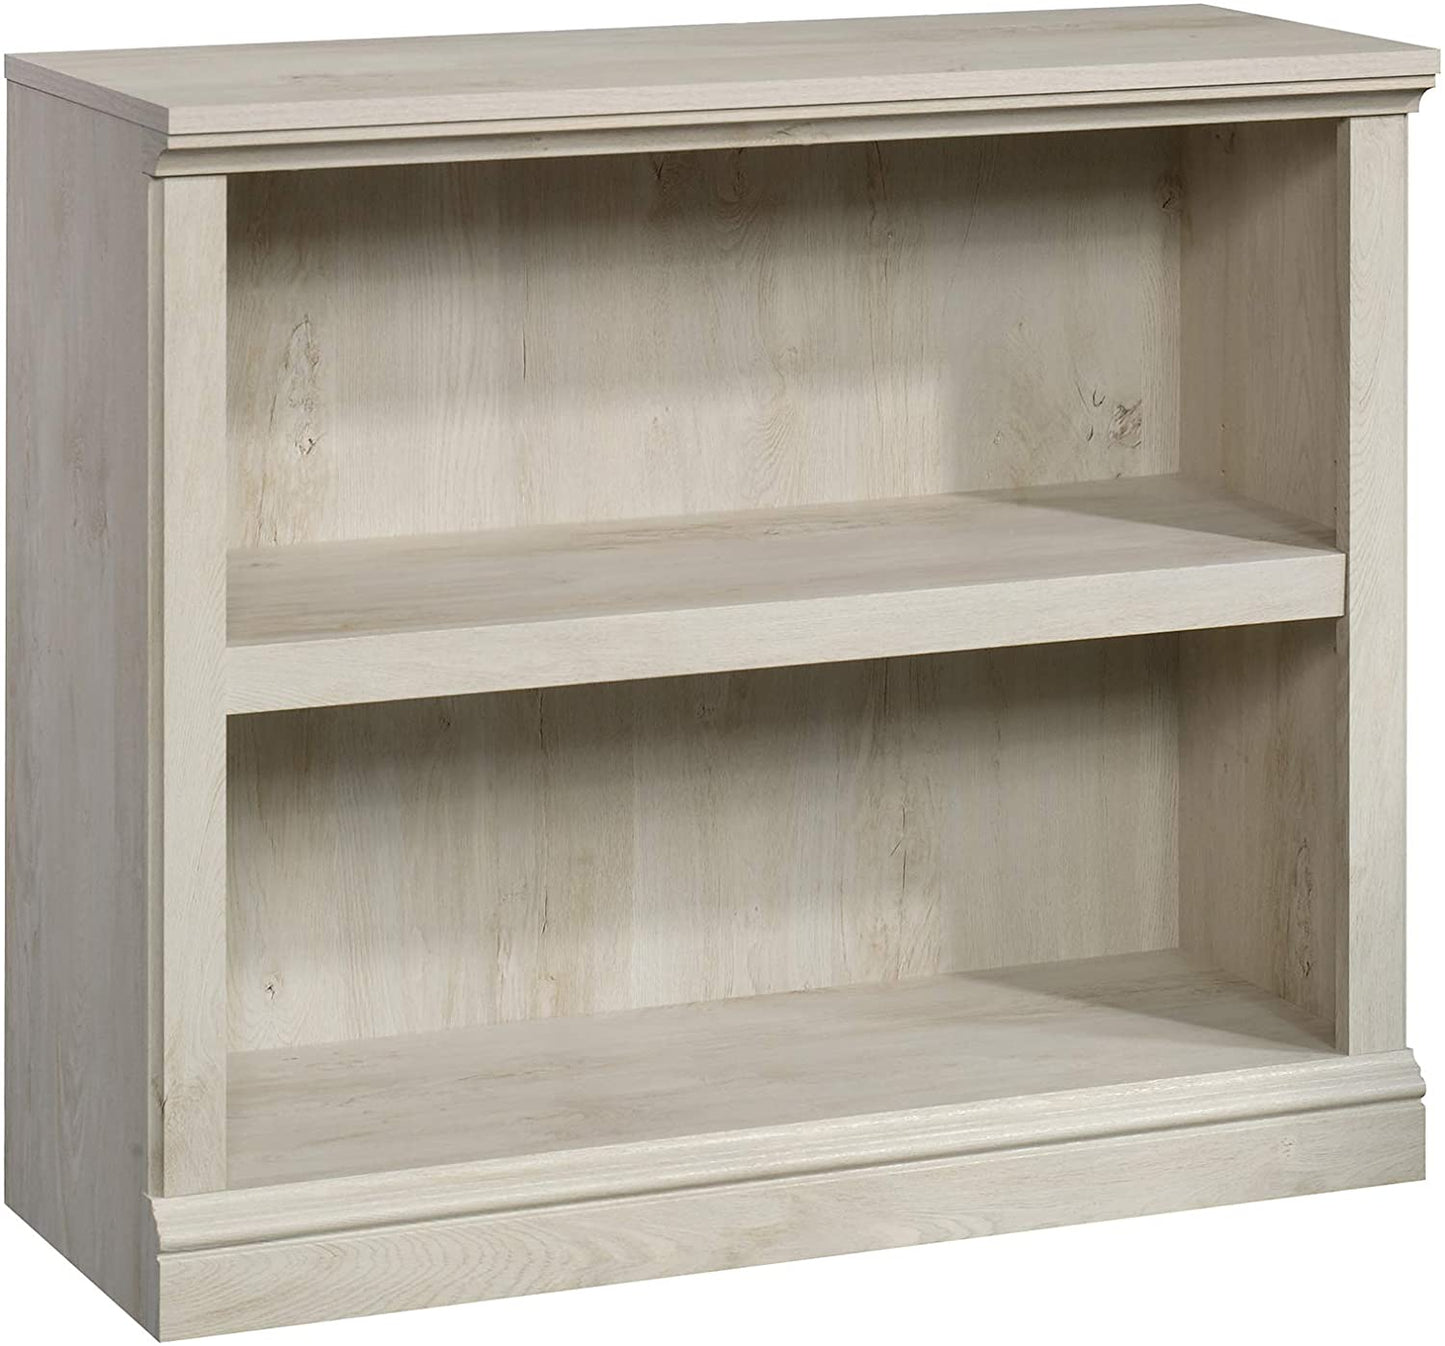 Bookshelf: Wooden 2-Shelf Bookcase  